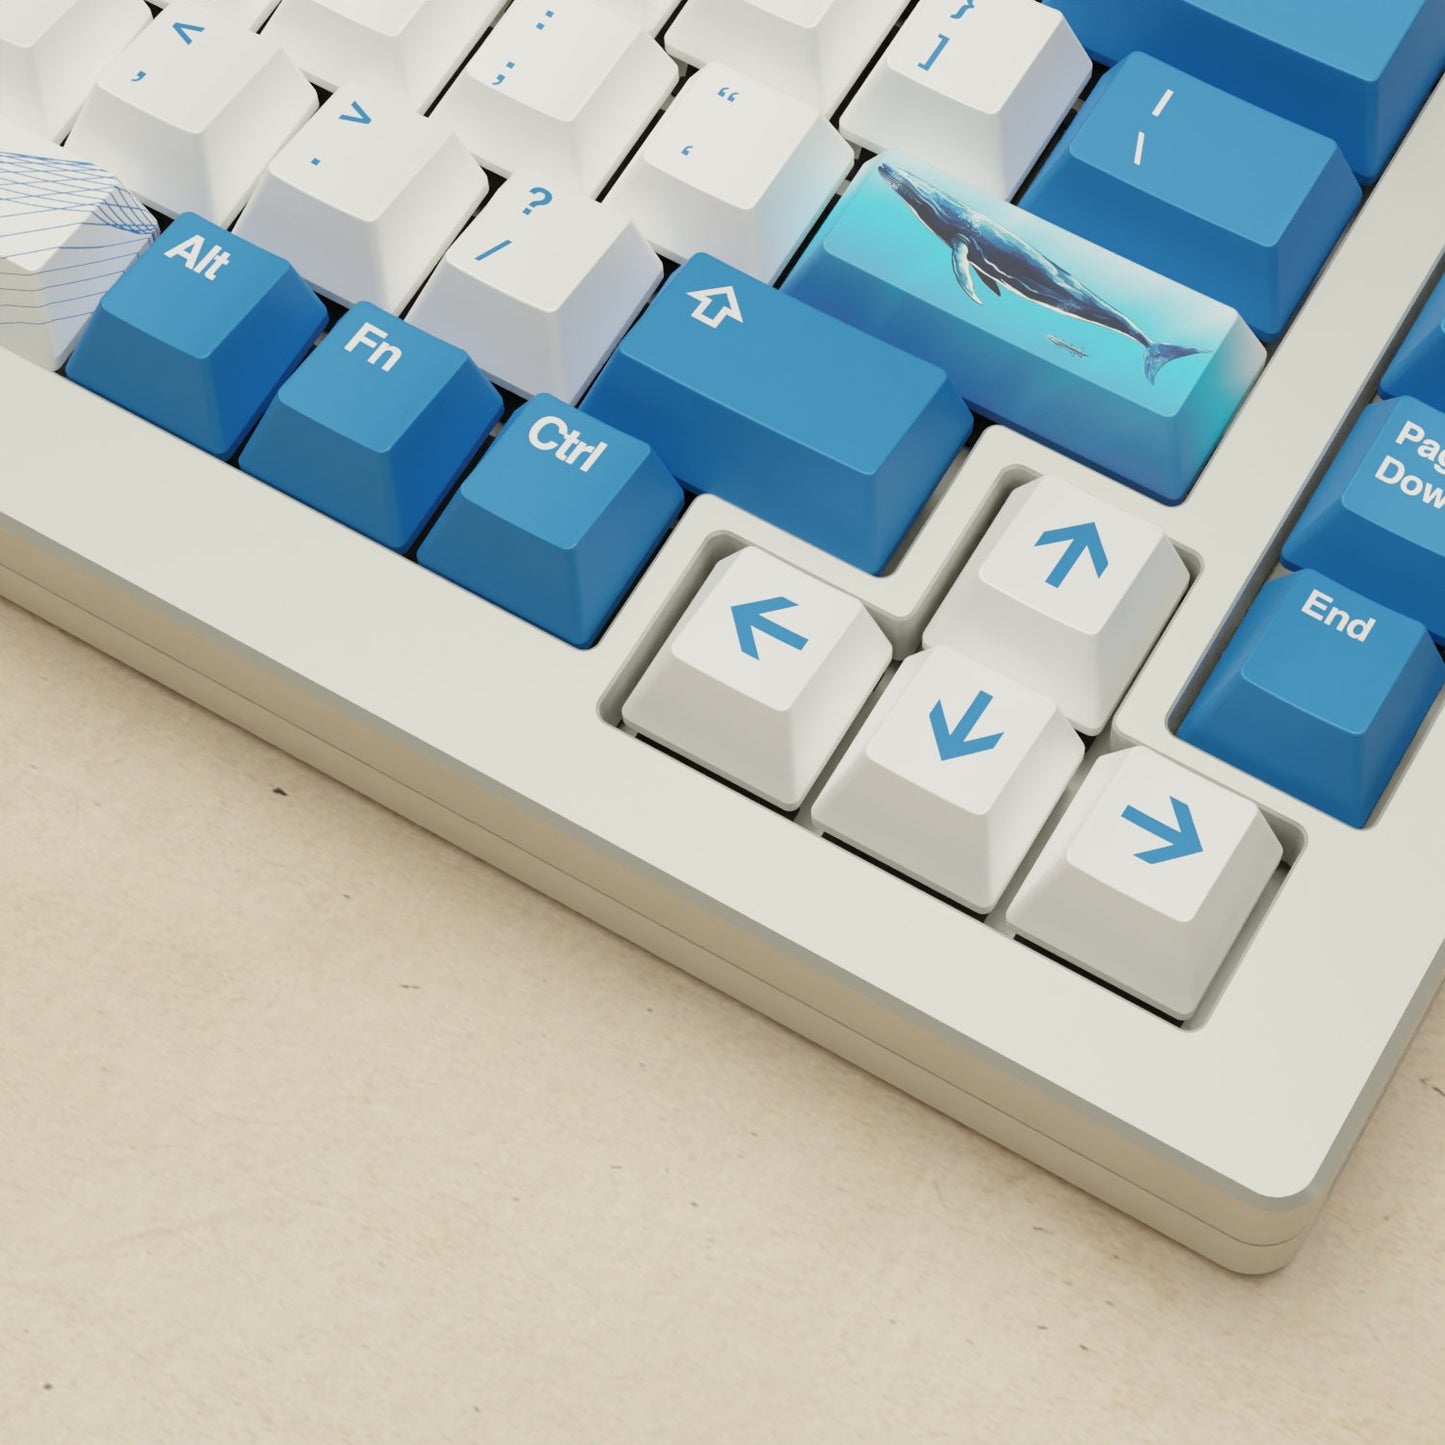 Monsgeek M1W - 75% Blue Whale Mechanical Keyboard - Goblintechkeys